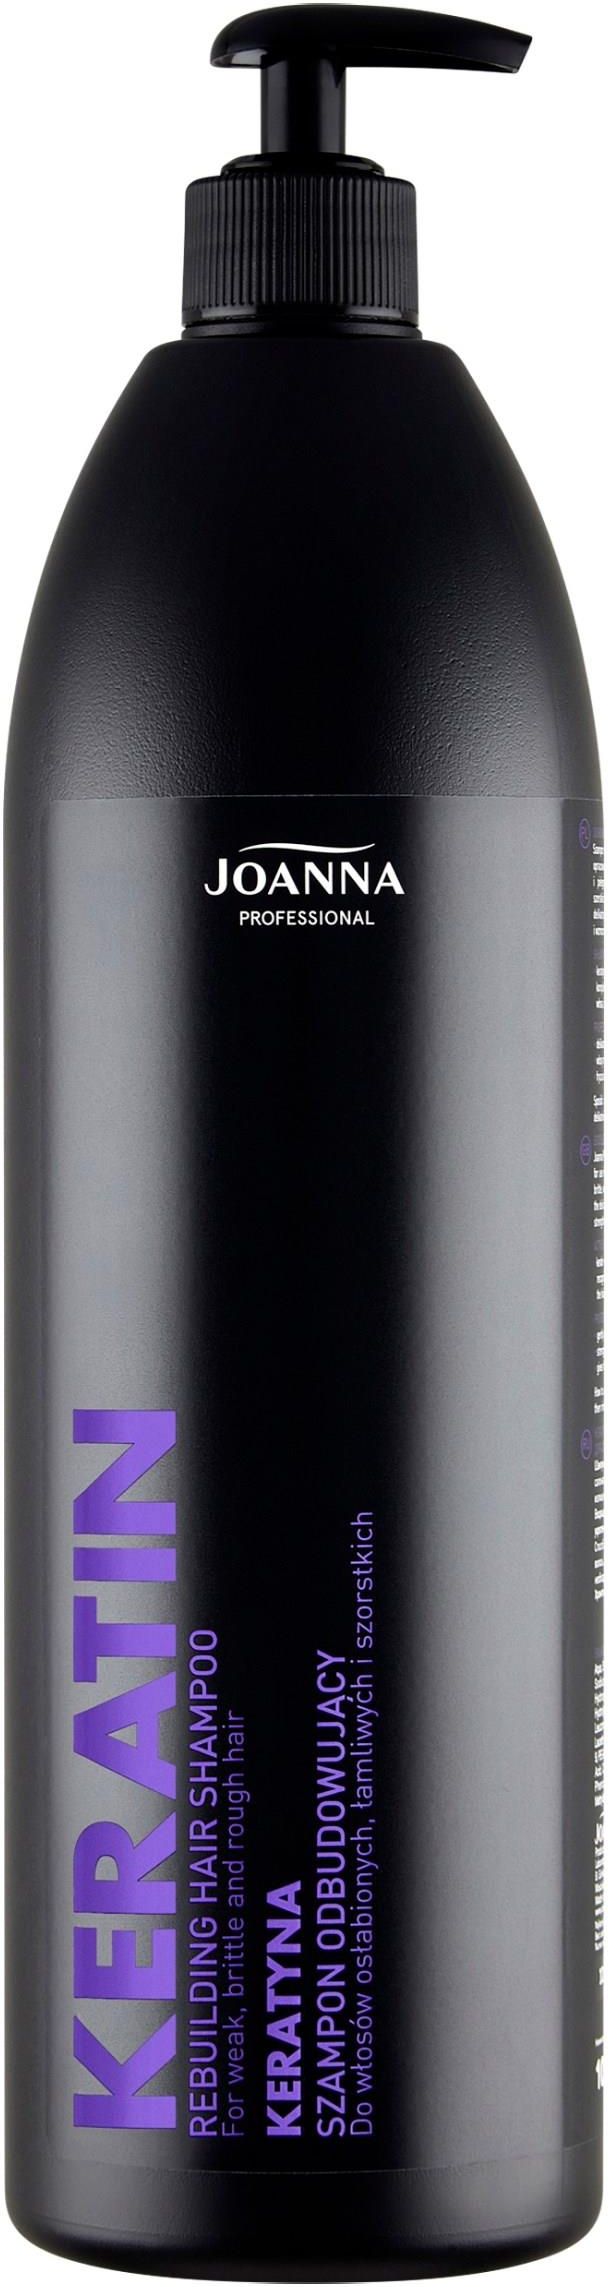 szampon joanna odbudowujacy z keratynina